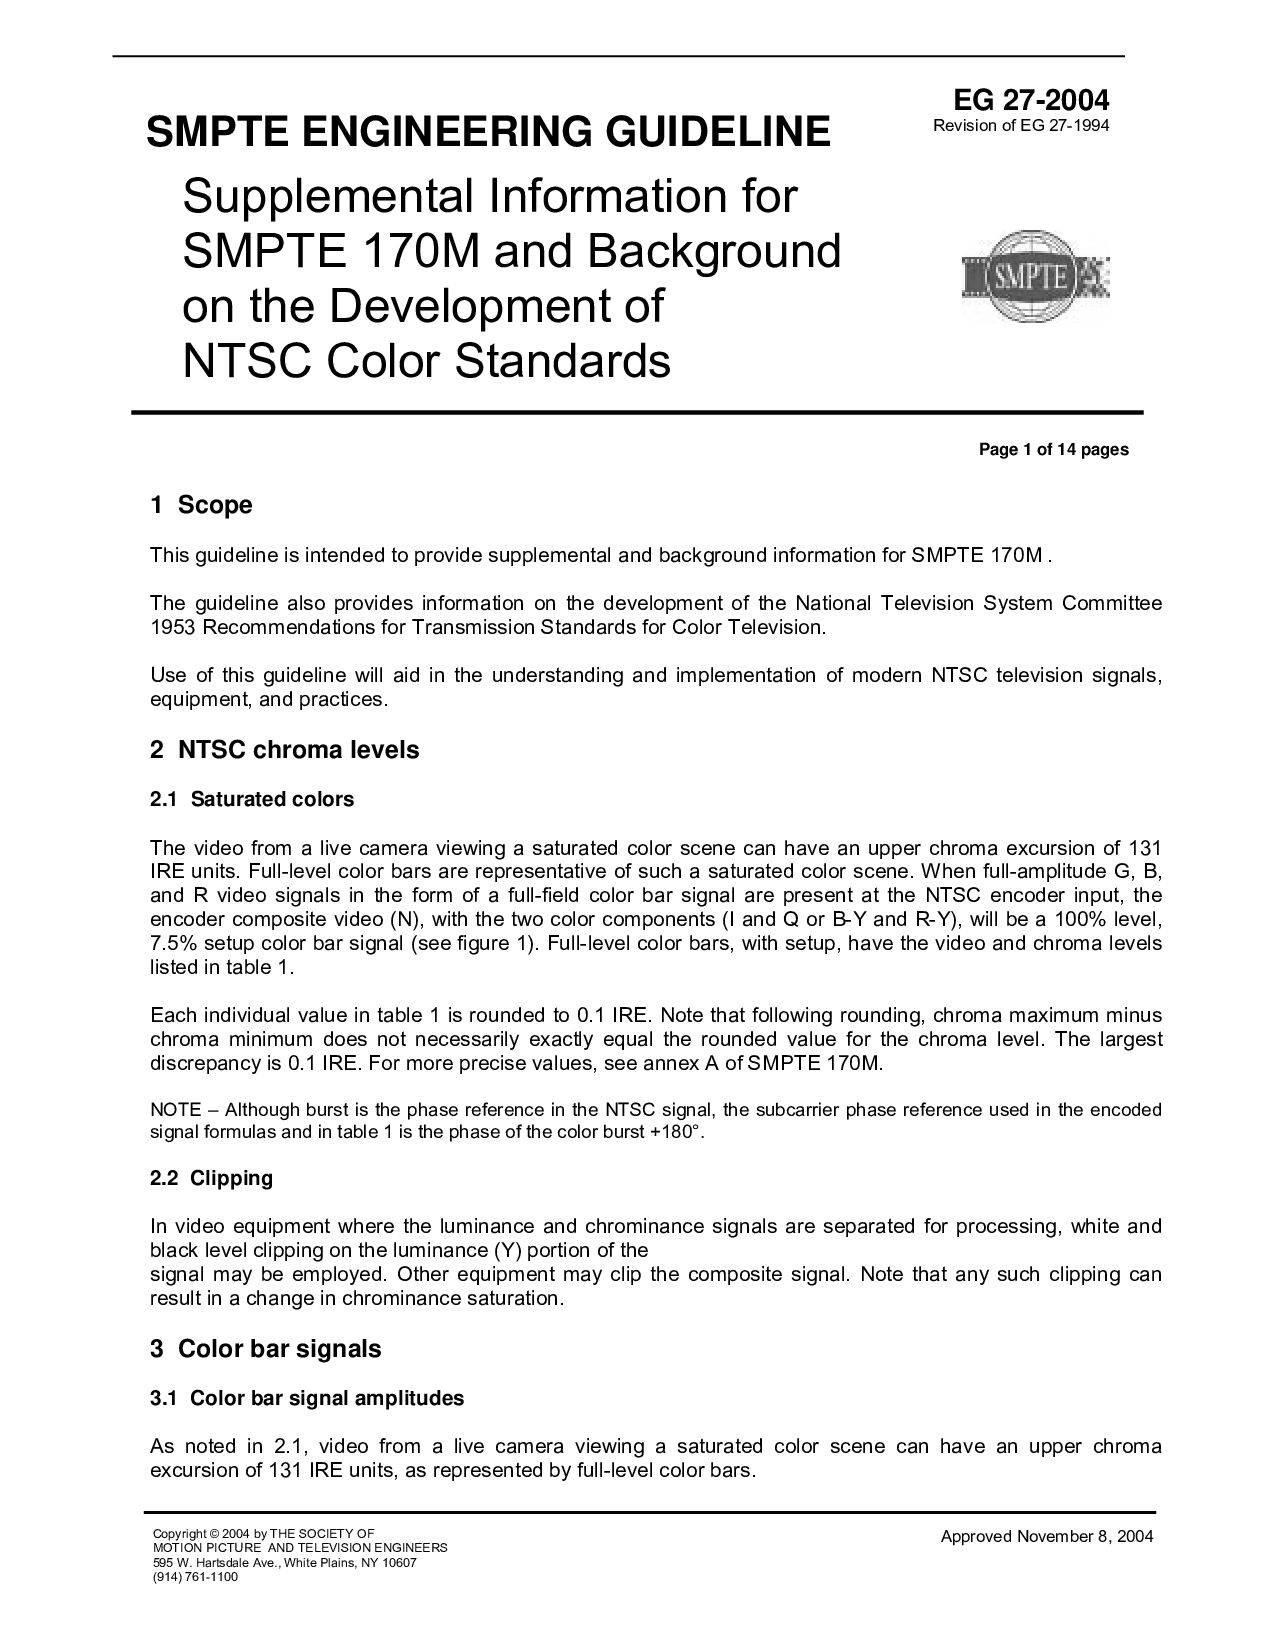 SMPTE EG 27-2004封面图